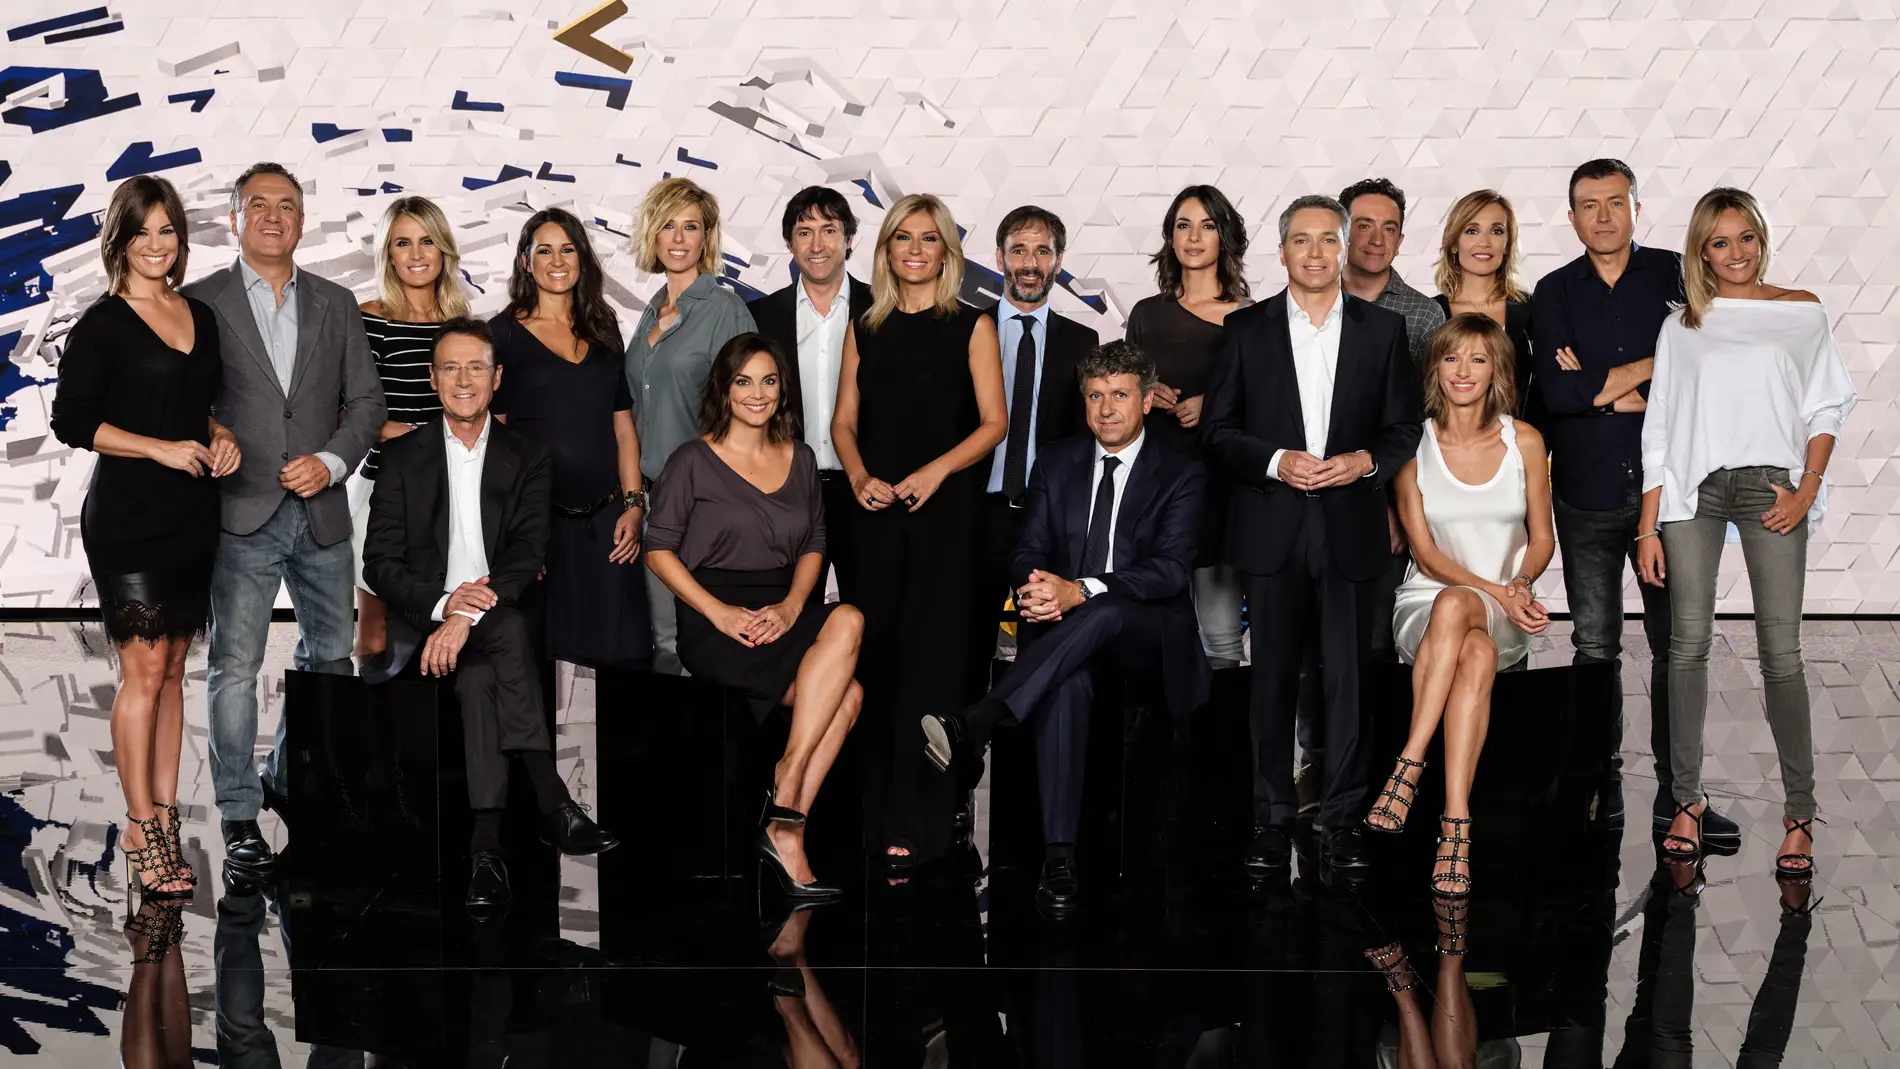 'Antena 3 Noticias', con los informativos líderes y más vistos de la televisión, inicia una nueva temporada reafirmando su compromiso con la información y su posición de referencia